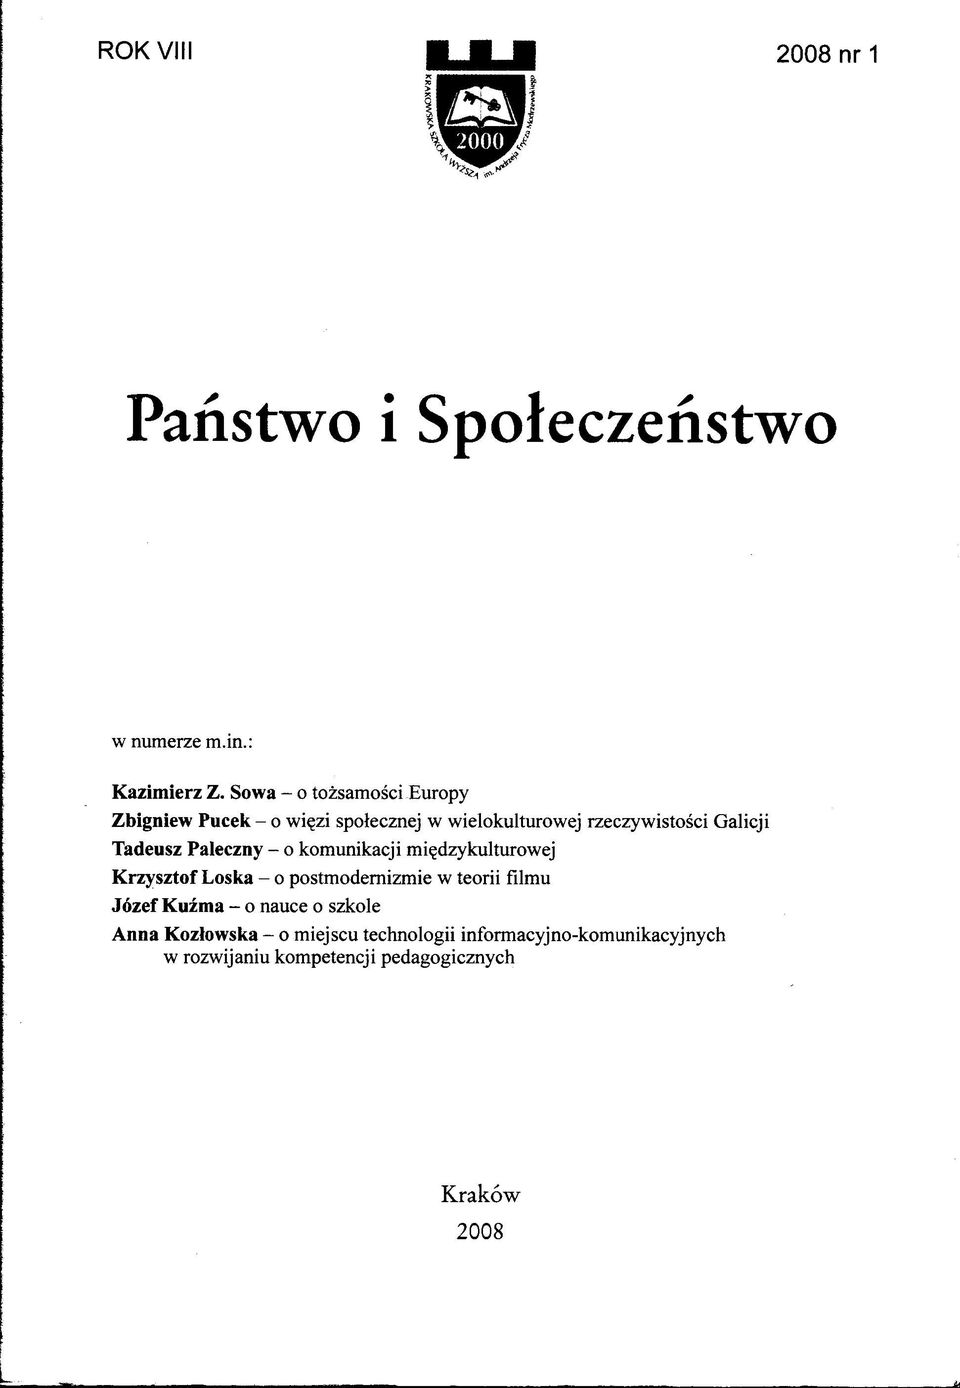 Galicji Tadeusz Paleczny - o komunikacji międzykulturowej K rzysztof Loska - o postmodernizmie w